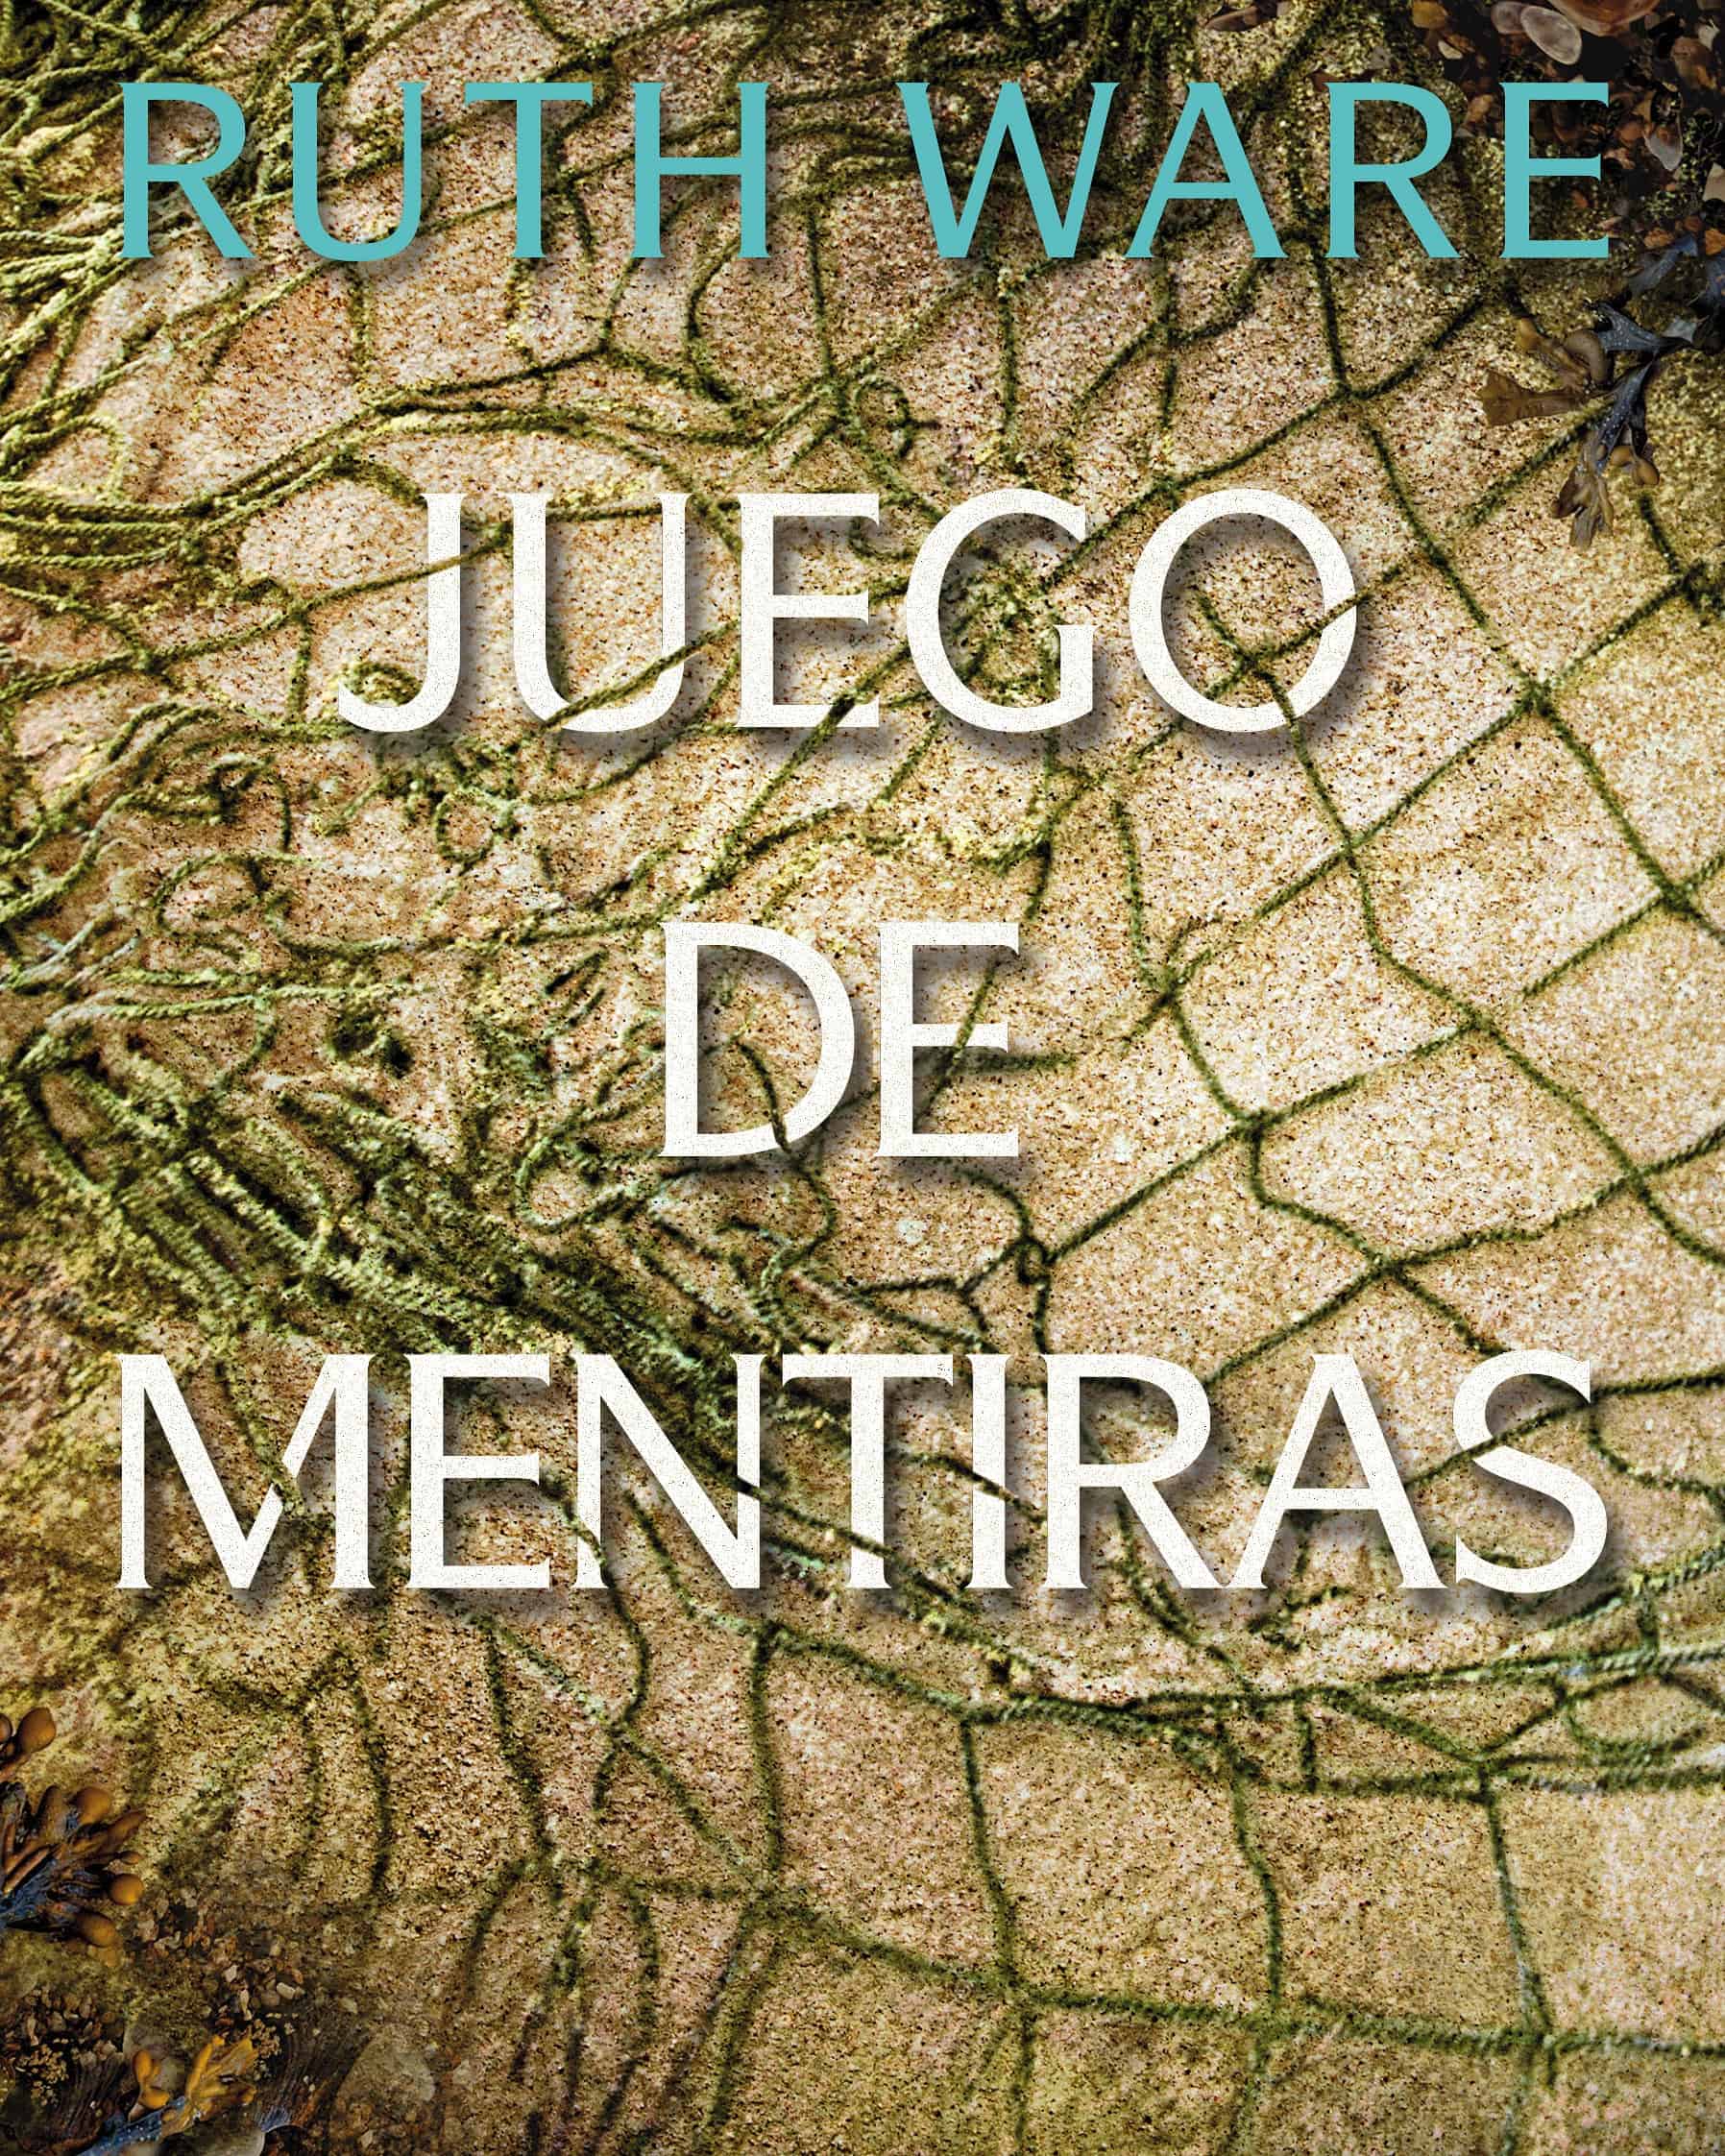 JUEGO DE MENTIRAS, de Ruth Ware